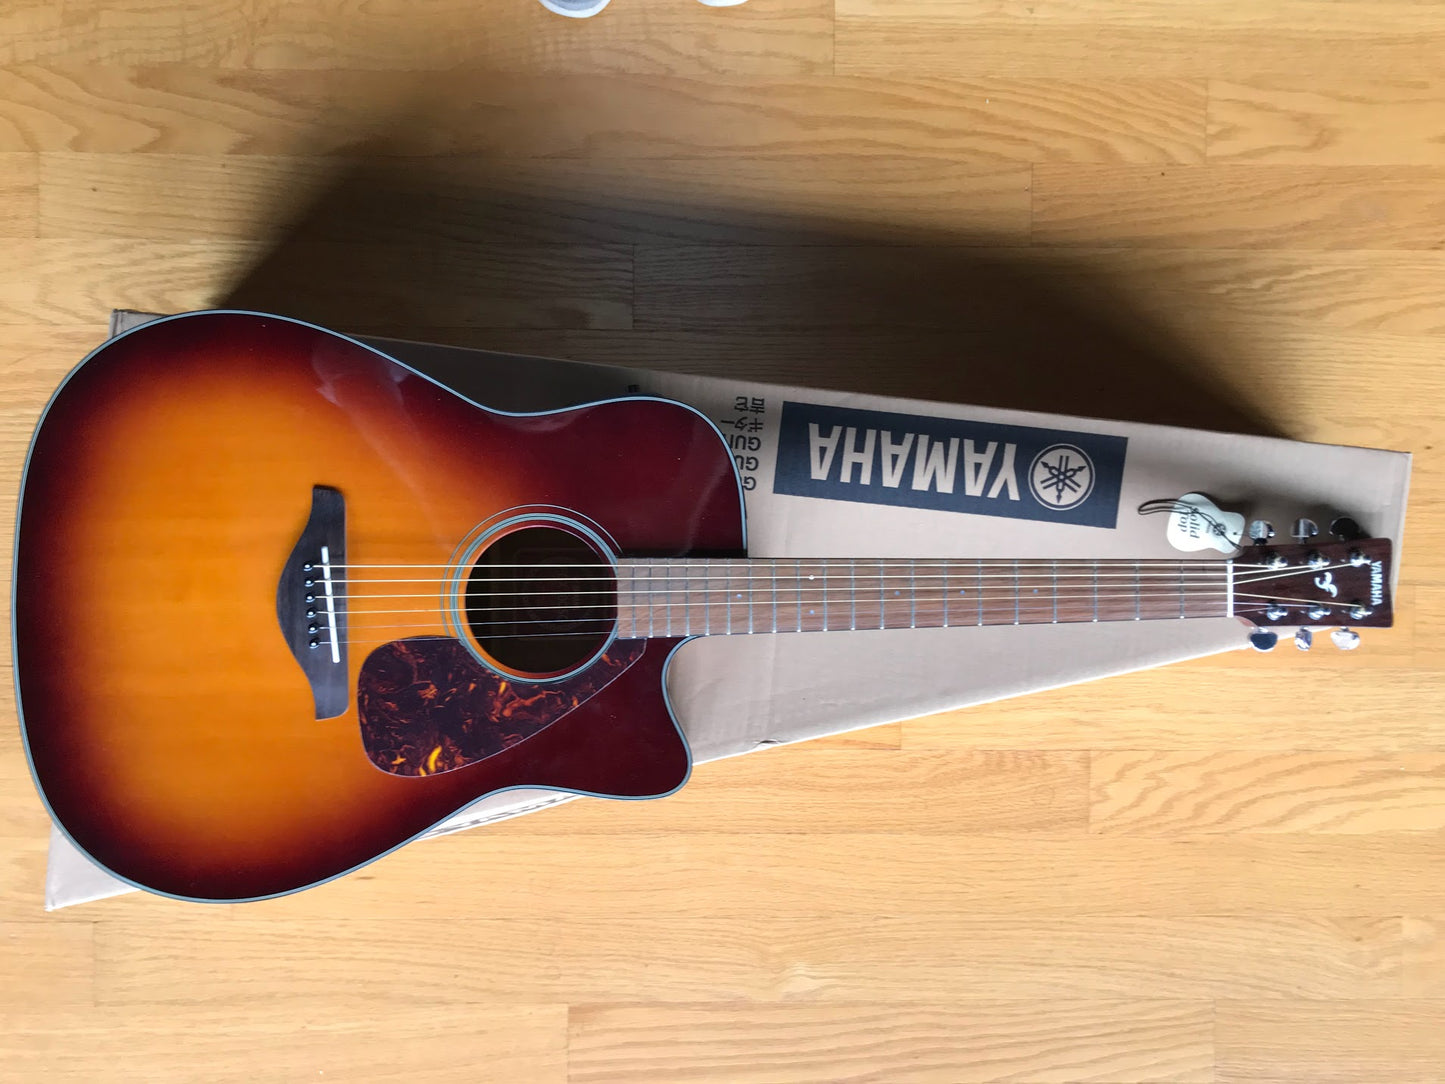 Yamaha FGX700SC Brown Sunburst Acoustic Guitar Folk Cutaway Ac/El, System 55T,